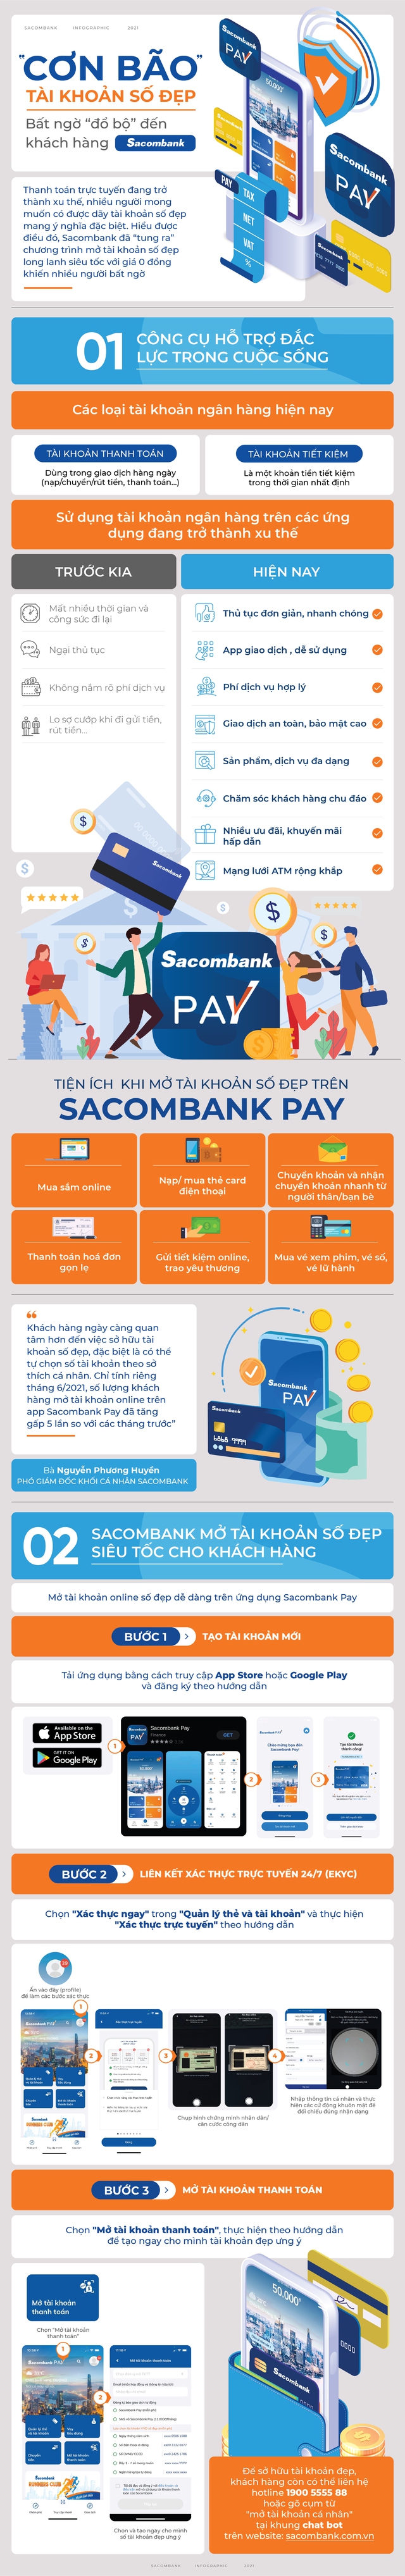 Cơn bão tài khoản số đẹp bất ngờ đổ bộ đến khách hàng Sacombank - Ảnh 1.